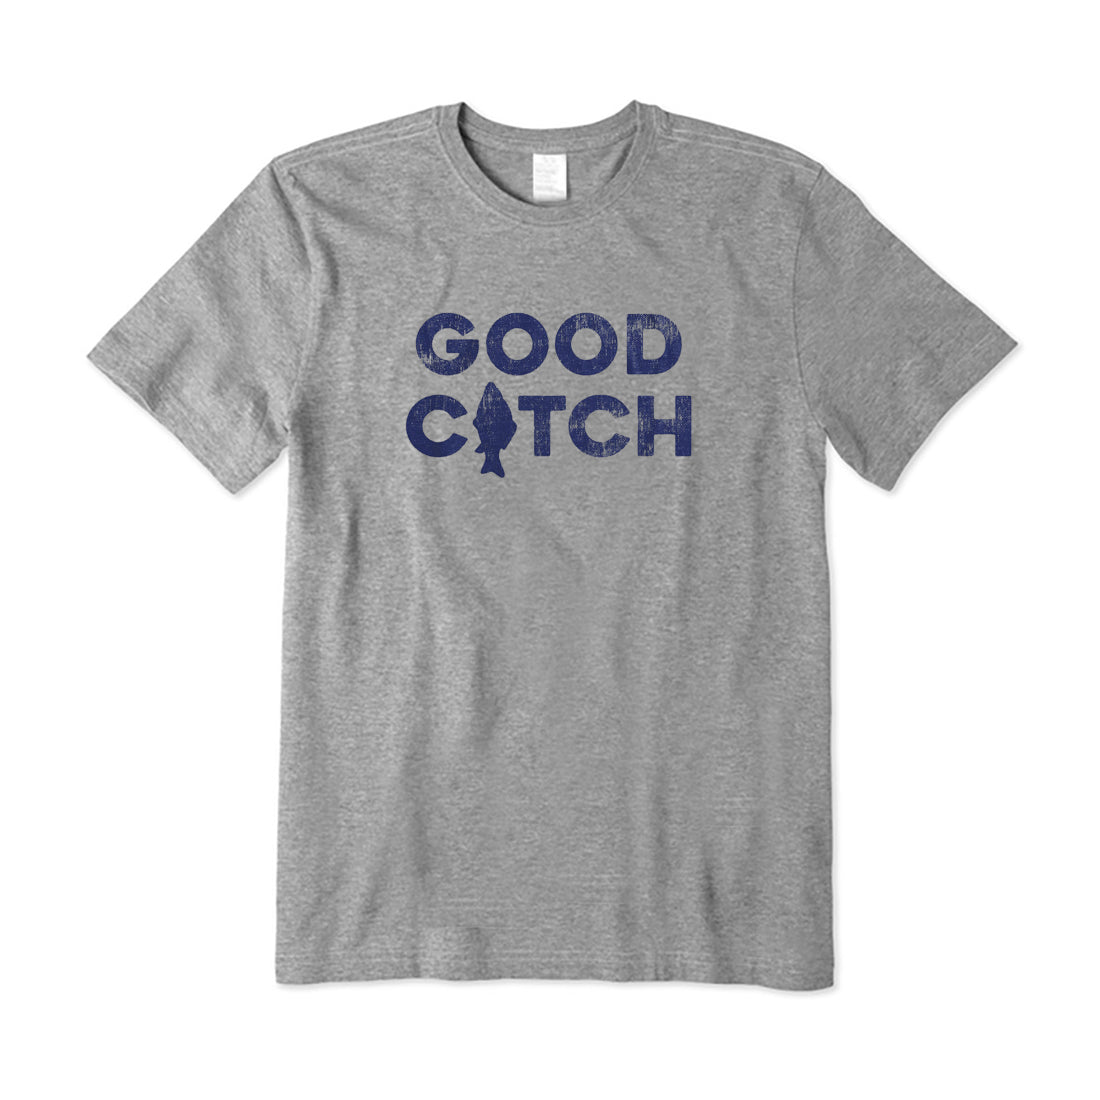 Good Catch T-Shirt